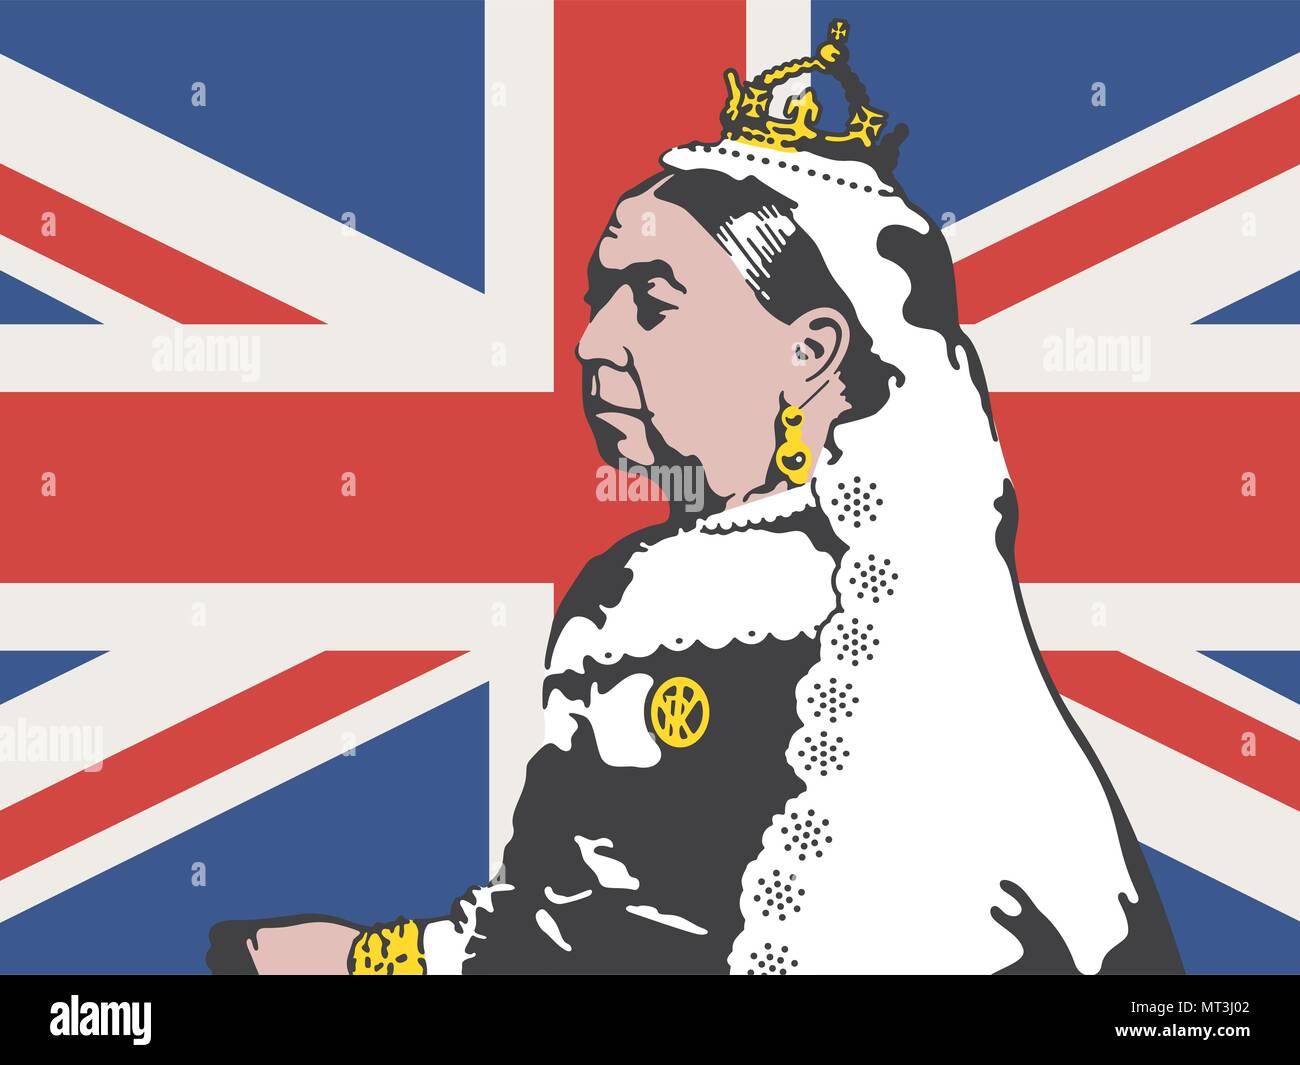 Illustration Vecteur de la reine Victoria. Dessin de Victoria, l'ancienne reine d'Angleterre dans un contexte de la British Union Jack flag. Illustration de Vecteur